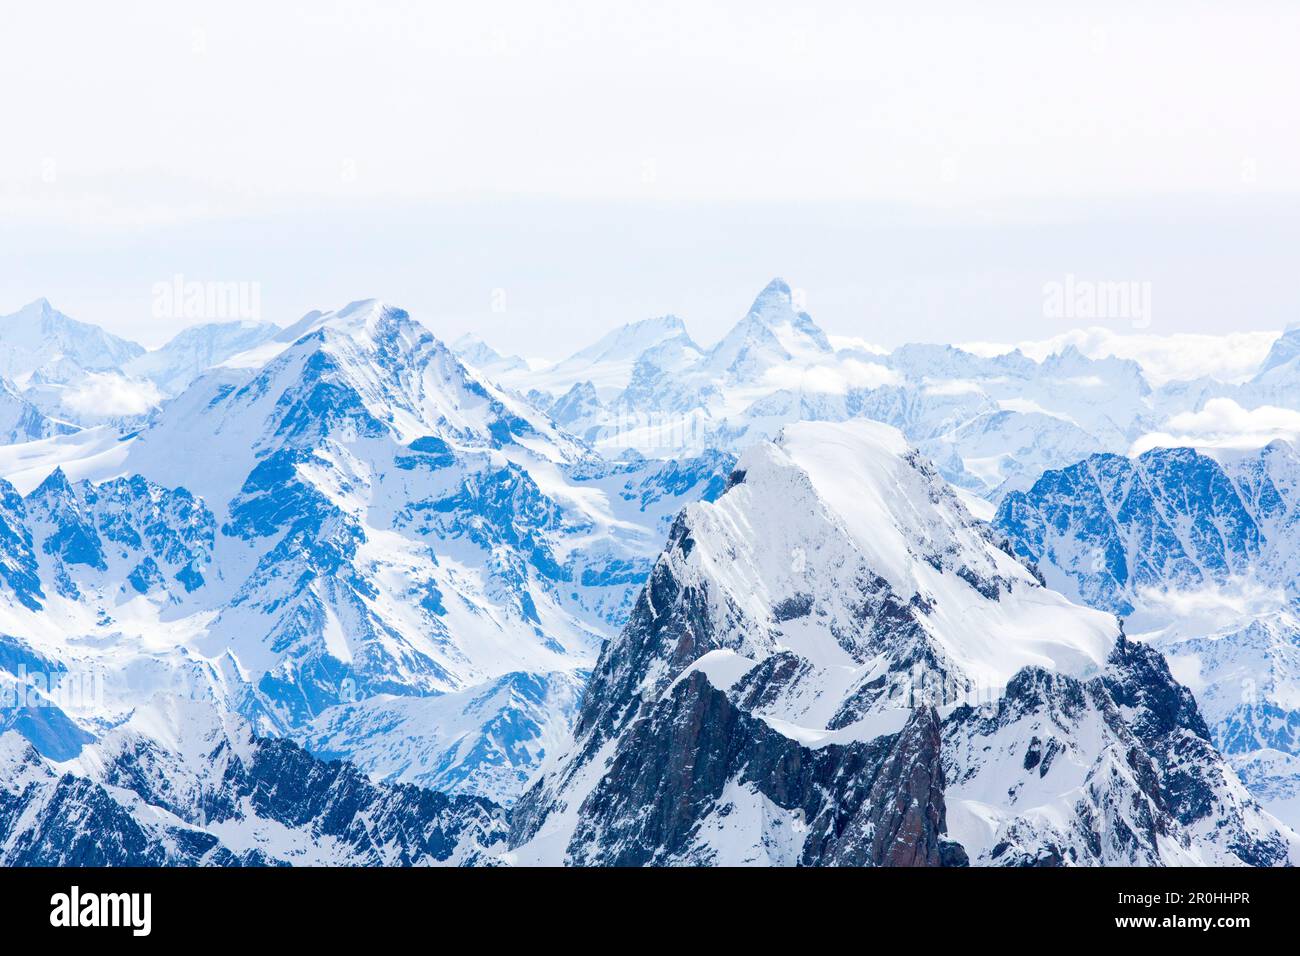 Grand Jorasses avec Grand Combin et Matterhorn en arrière-plan, massif du Mont blanc, Rhône-Alpes, haute-Savoie, France Banque D'Images